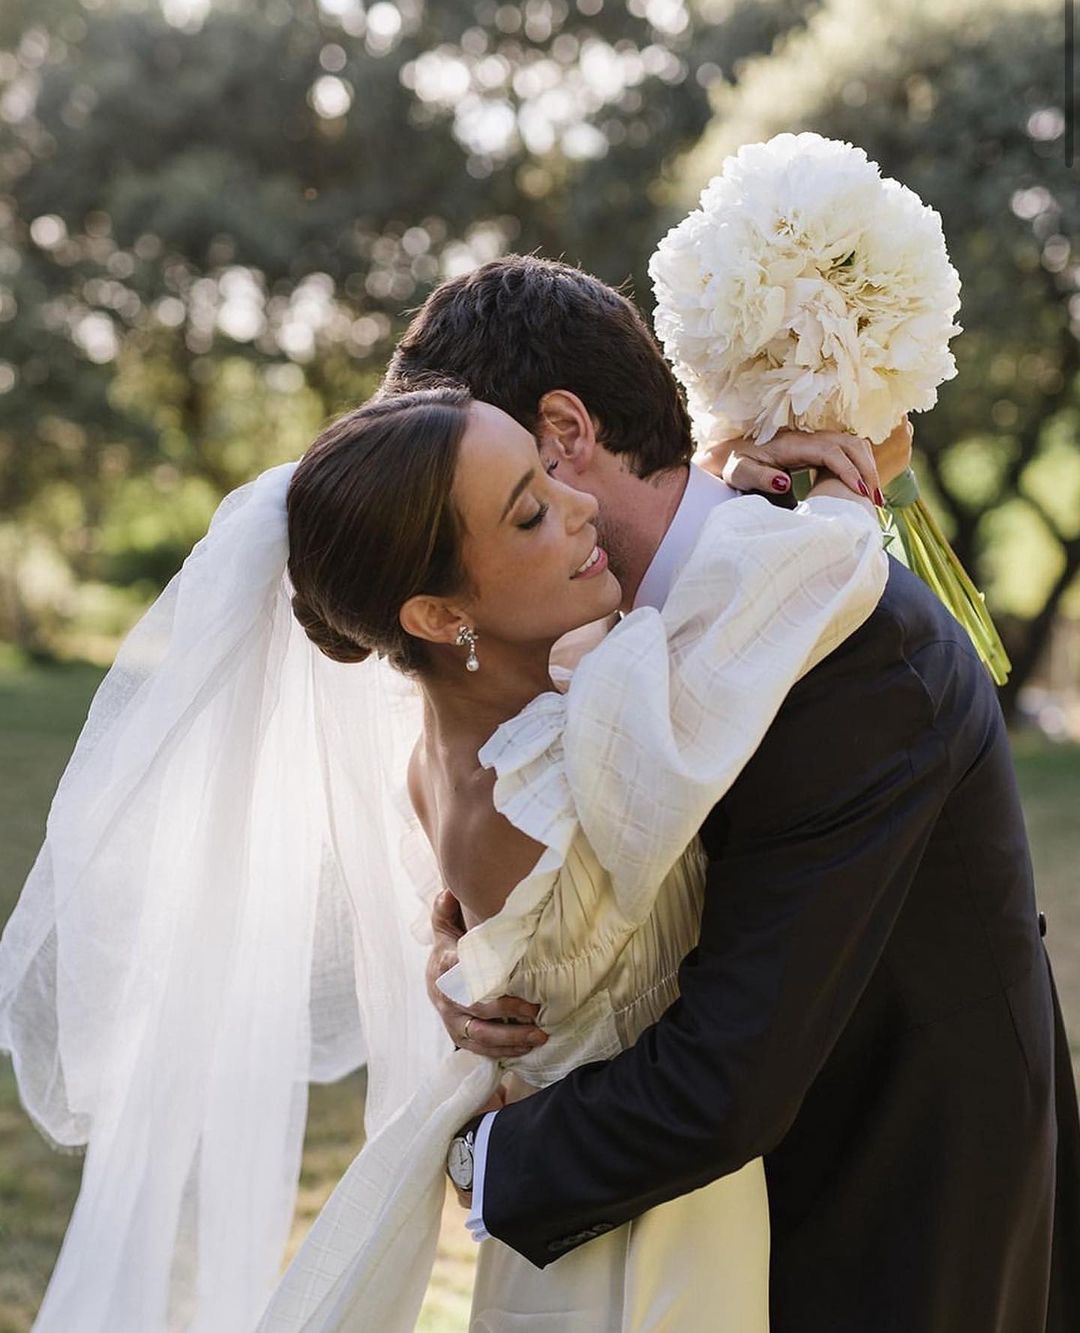 Erreurs courantes en photographie de mariage et comment les éviter